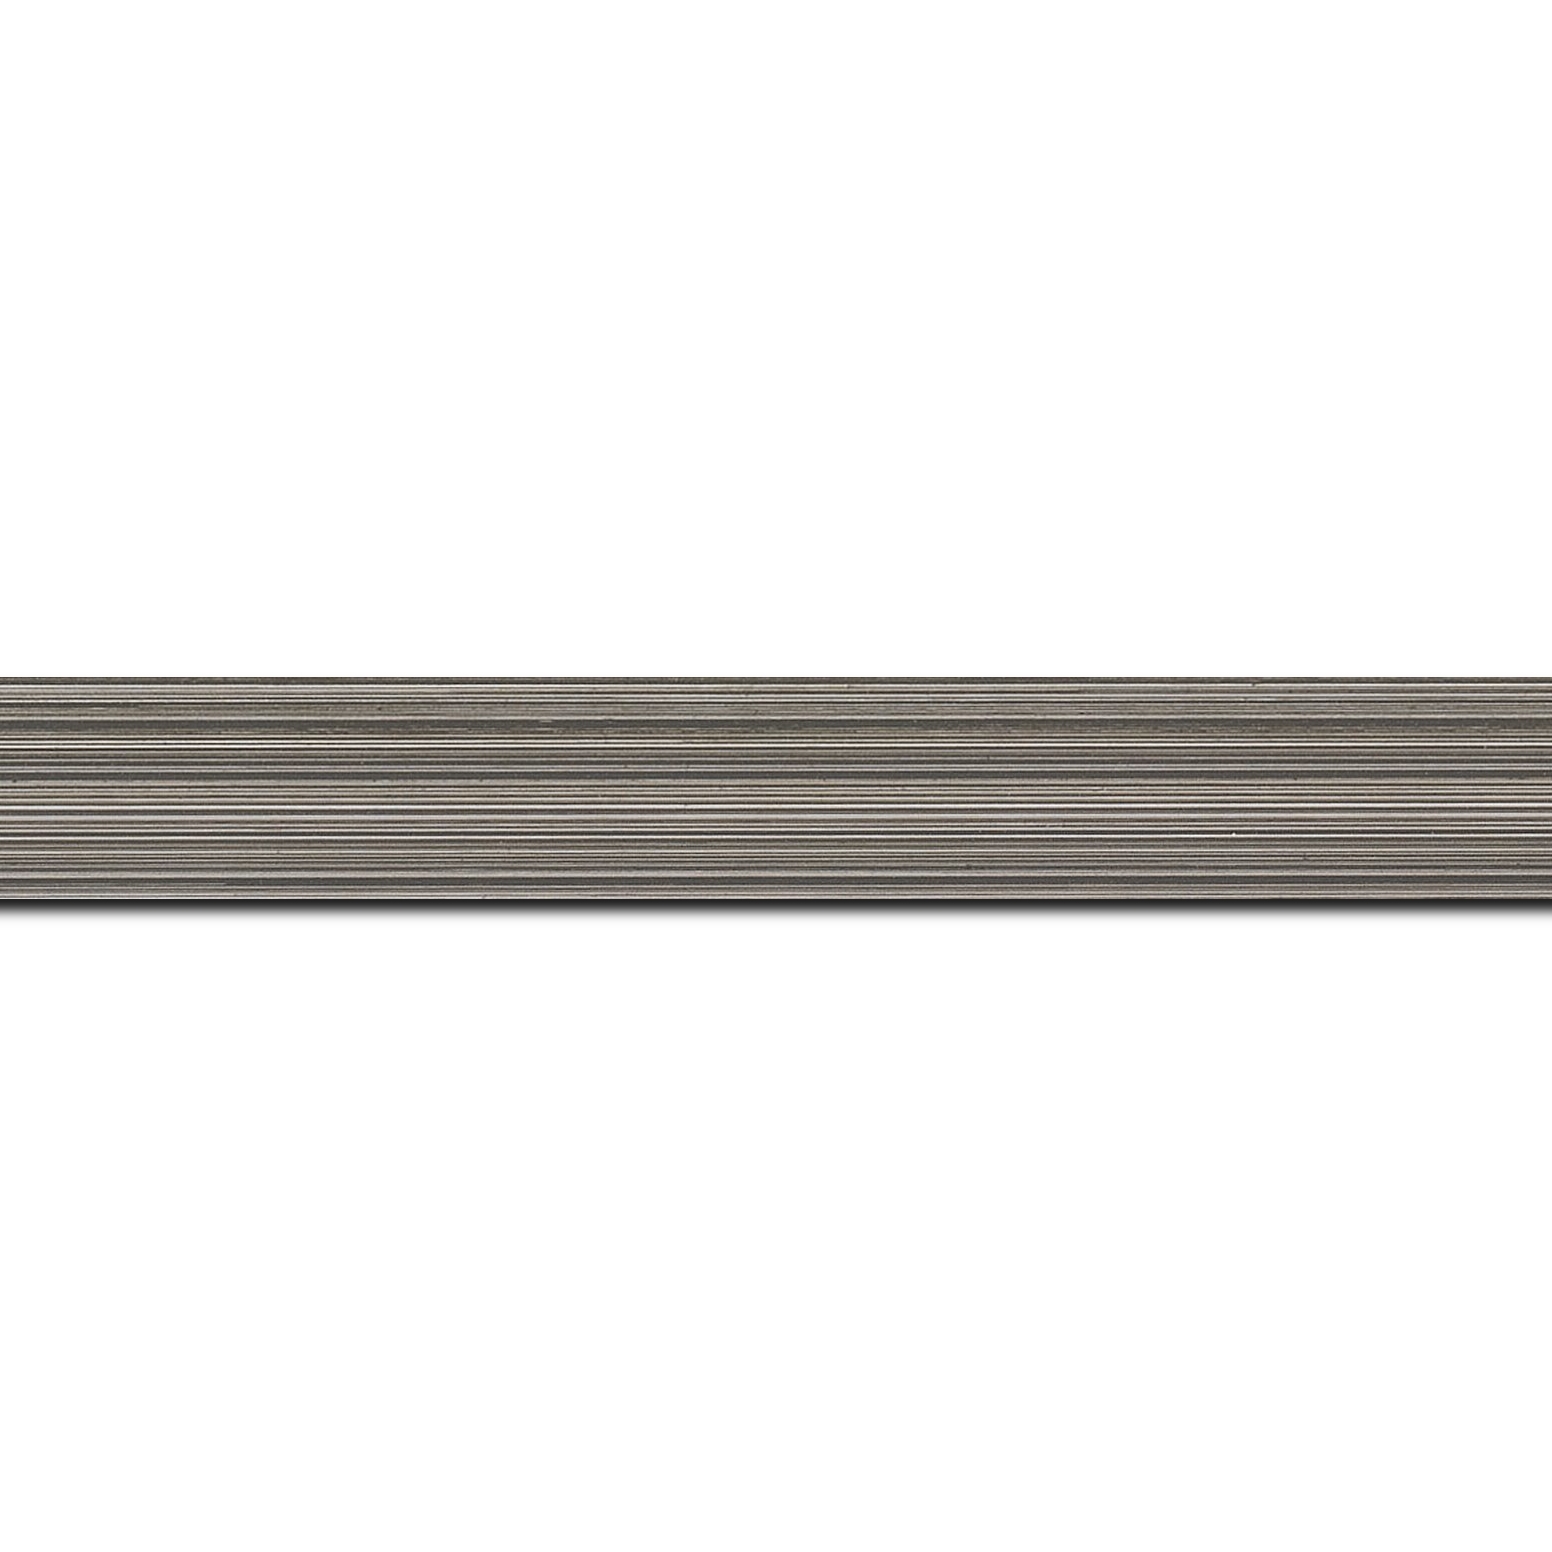 Pack par 12m, bois profil concave largeur 2.4cm couleur gris effet matière fond blanc  (longueur baguette pouvant varier entre 2.40m et 3m selon arrivage des bois)